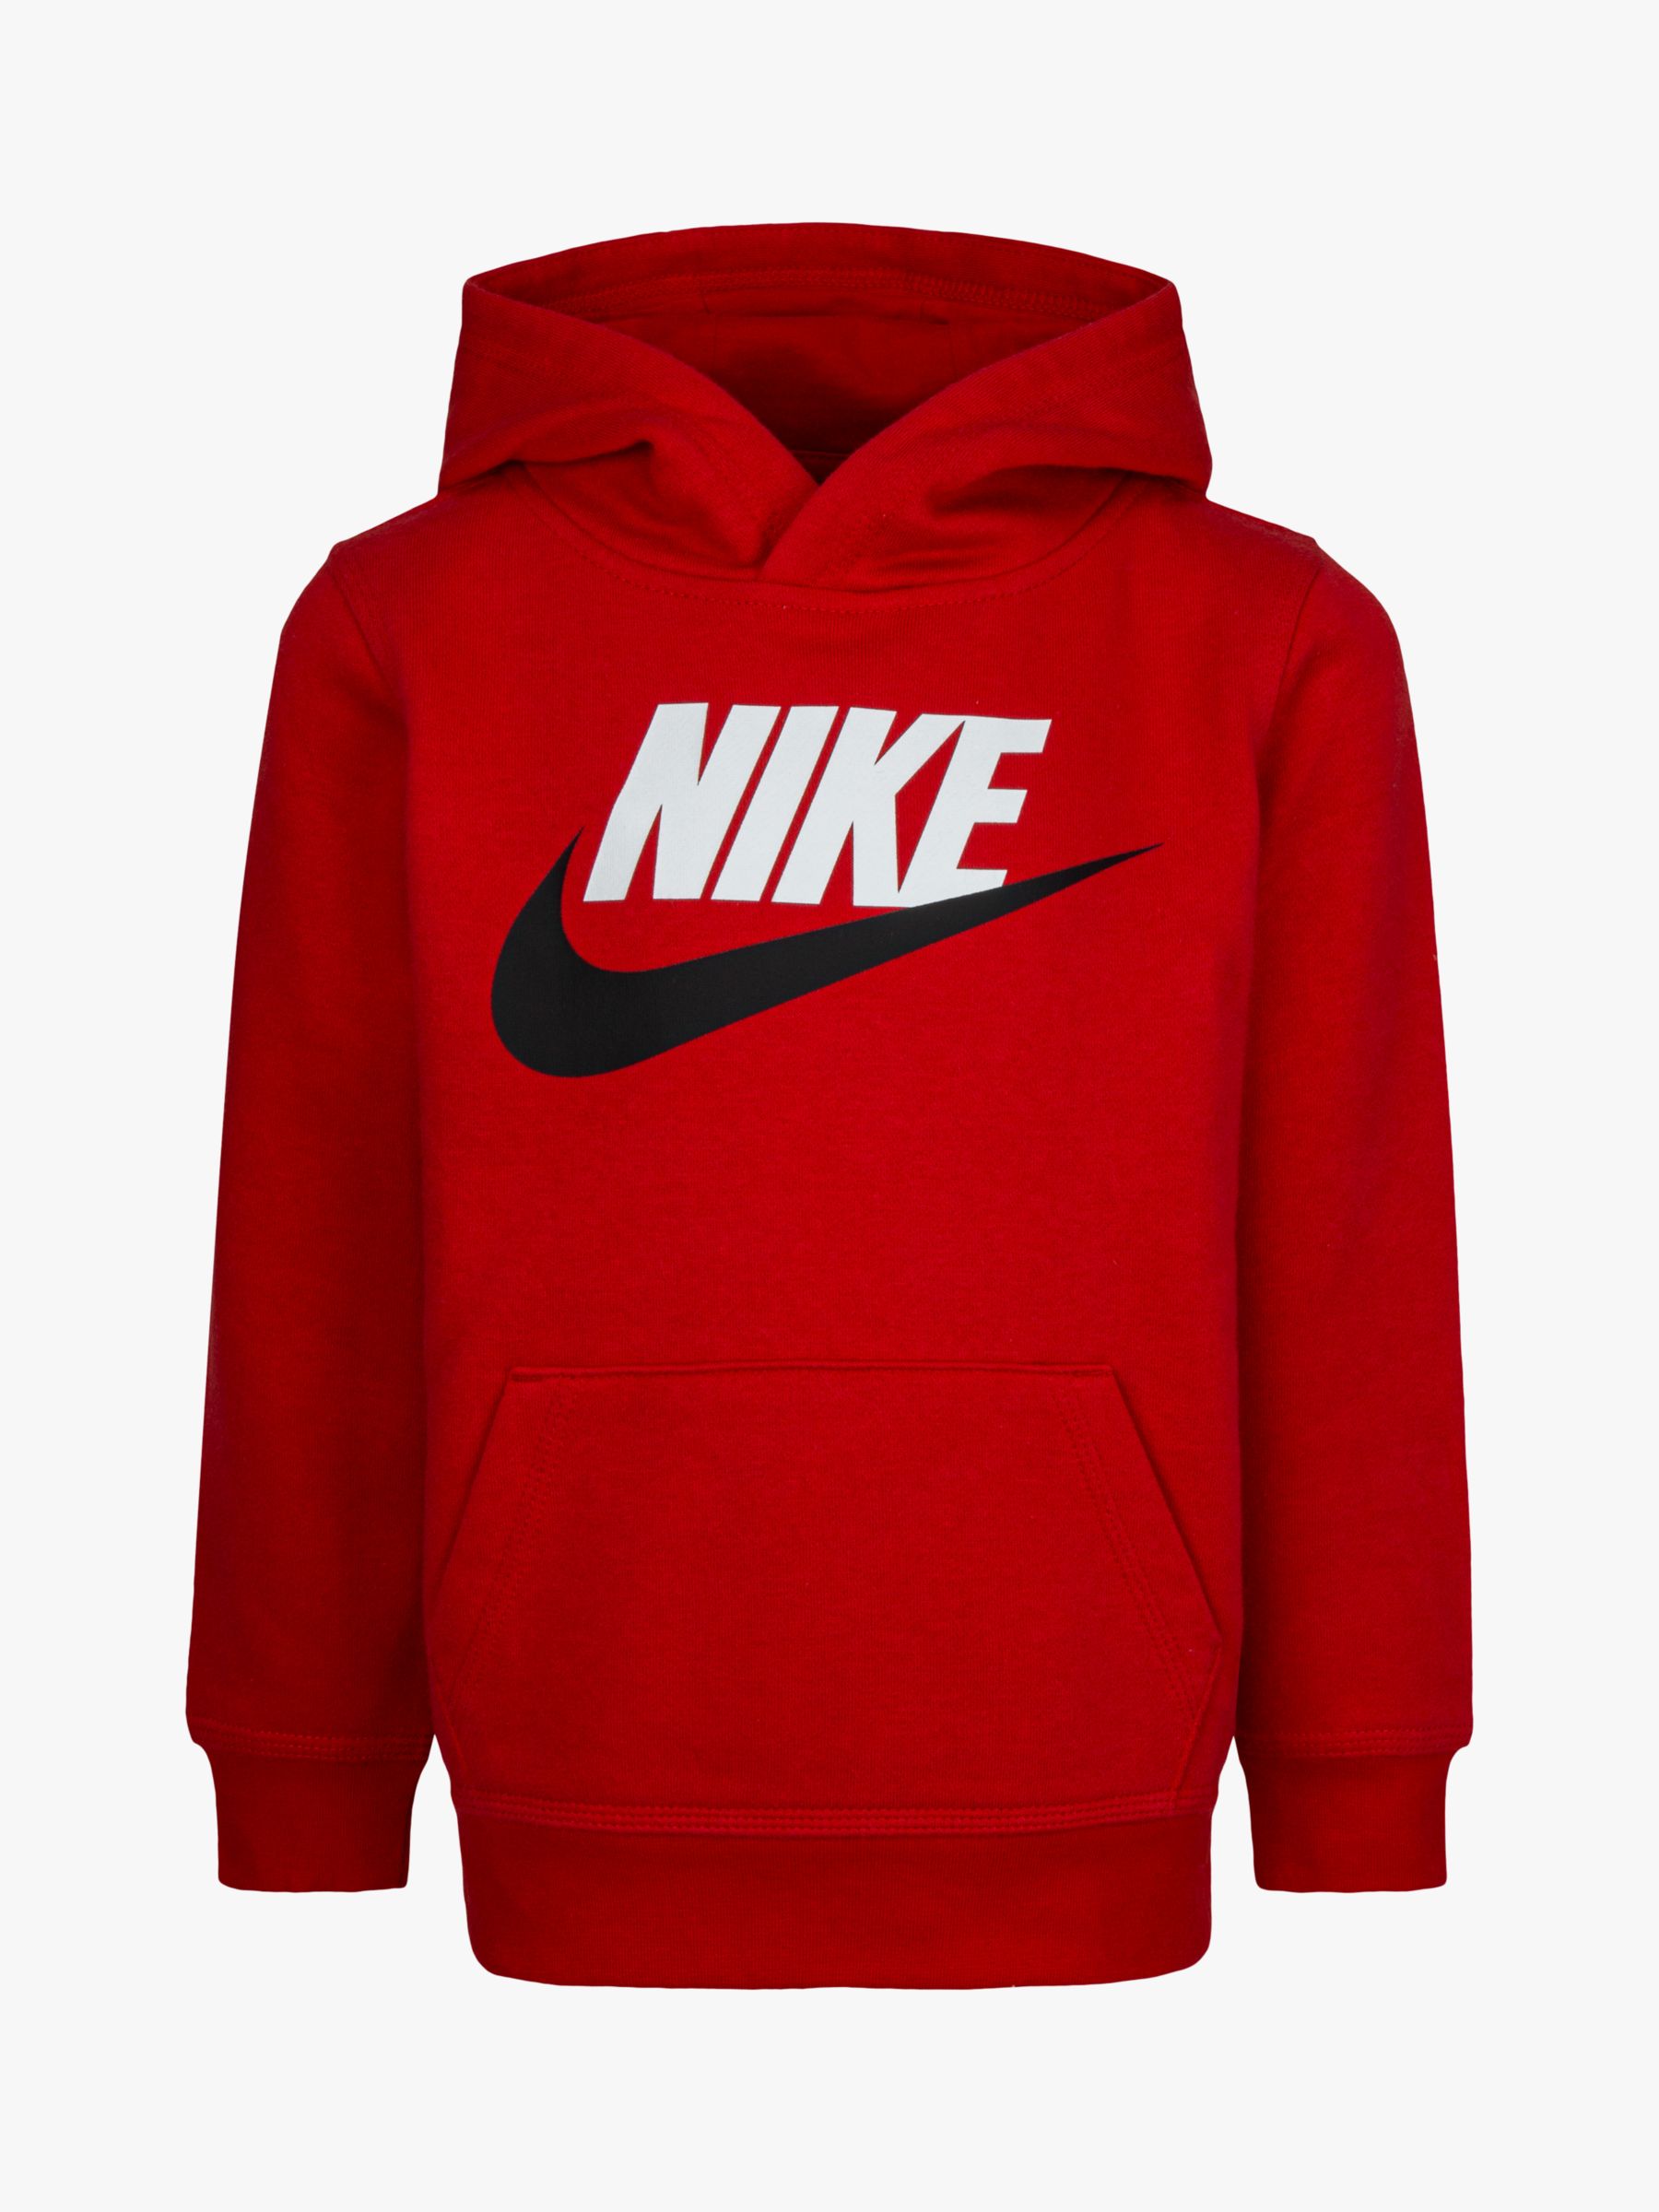 Integraal nederlaag Kwik Nike Kids' Logo Hoodie, Red at John Lewis & Partners